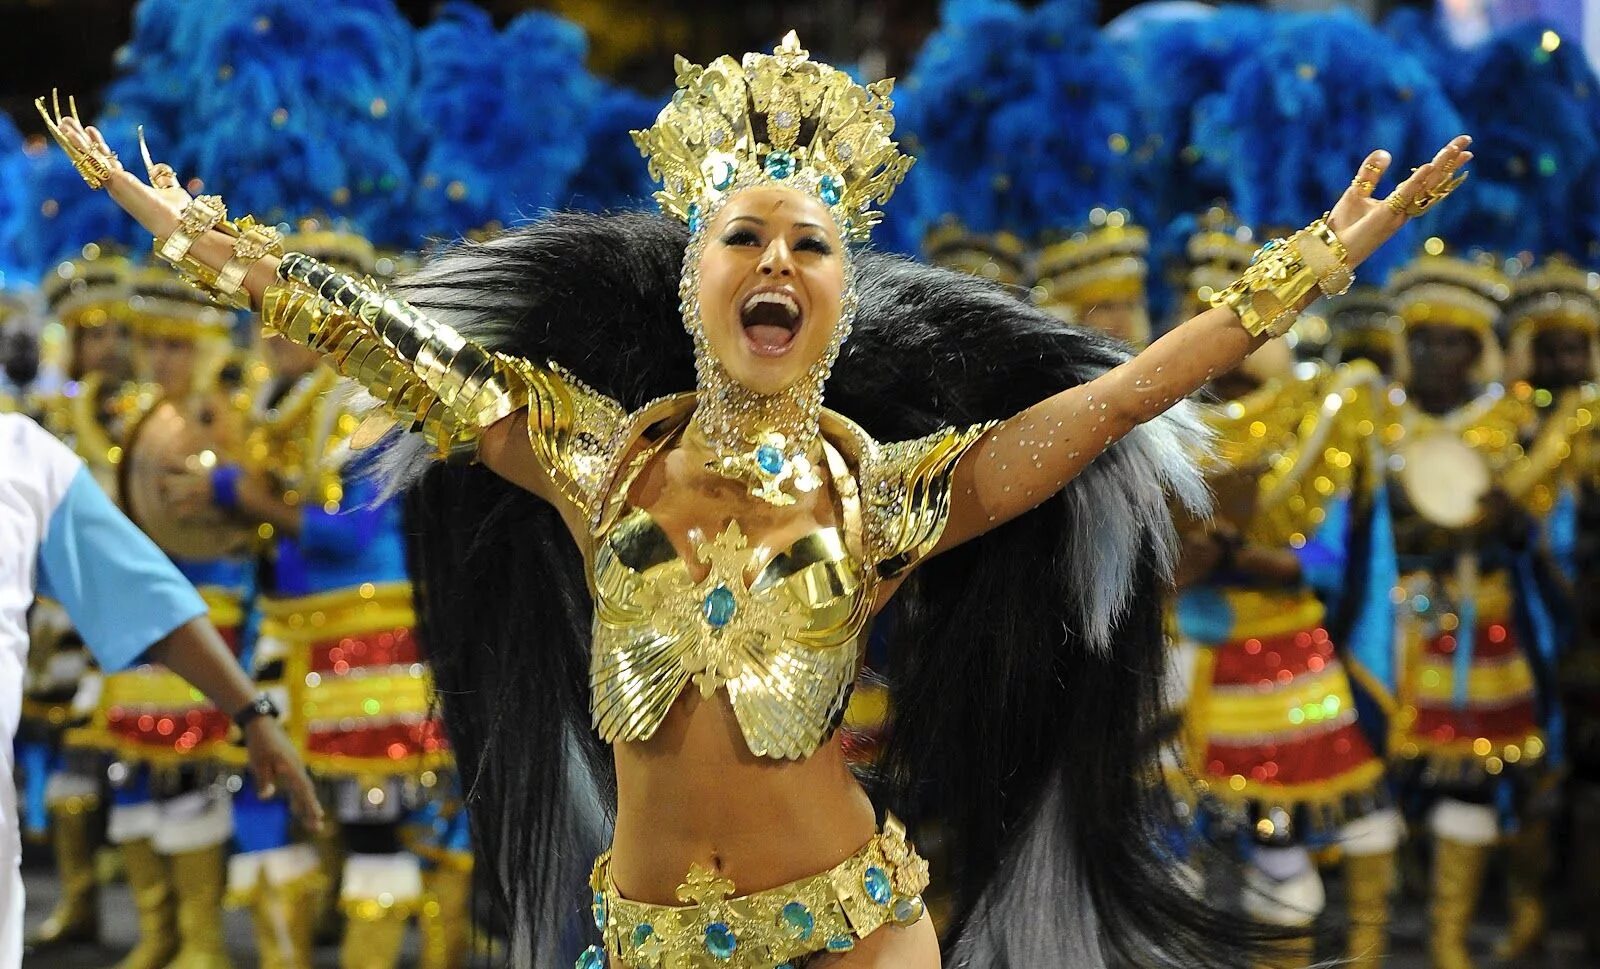 Карнавал в Рио-де-Жанейро Рио-де-Жанейро Бразилия. Самба карнавал в Бразилии. Карнавал Рио де Жанейро танцы. Бразильский карнавал Бразилия.